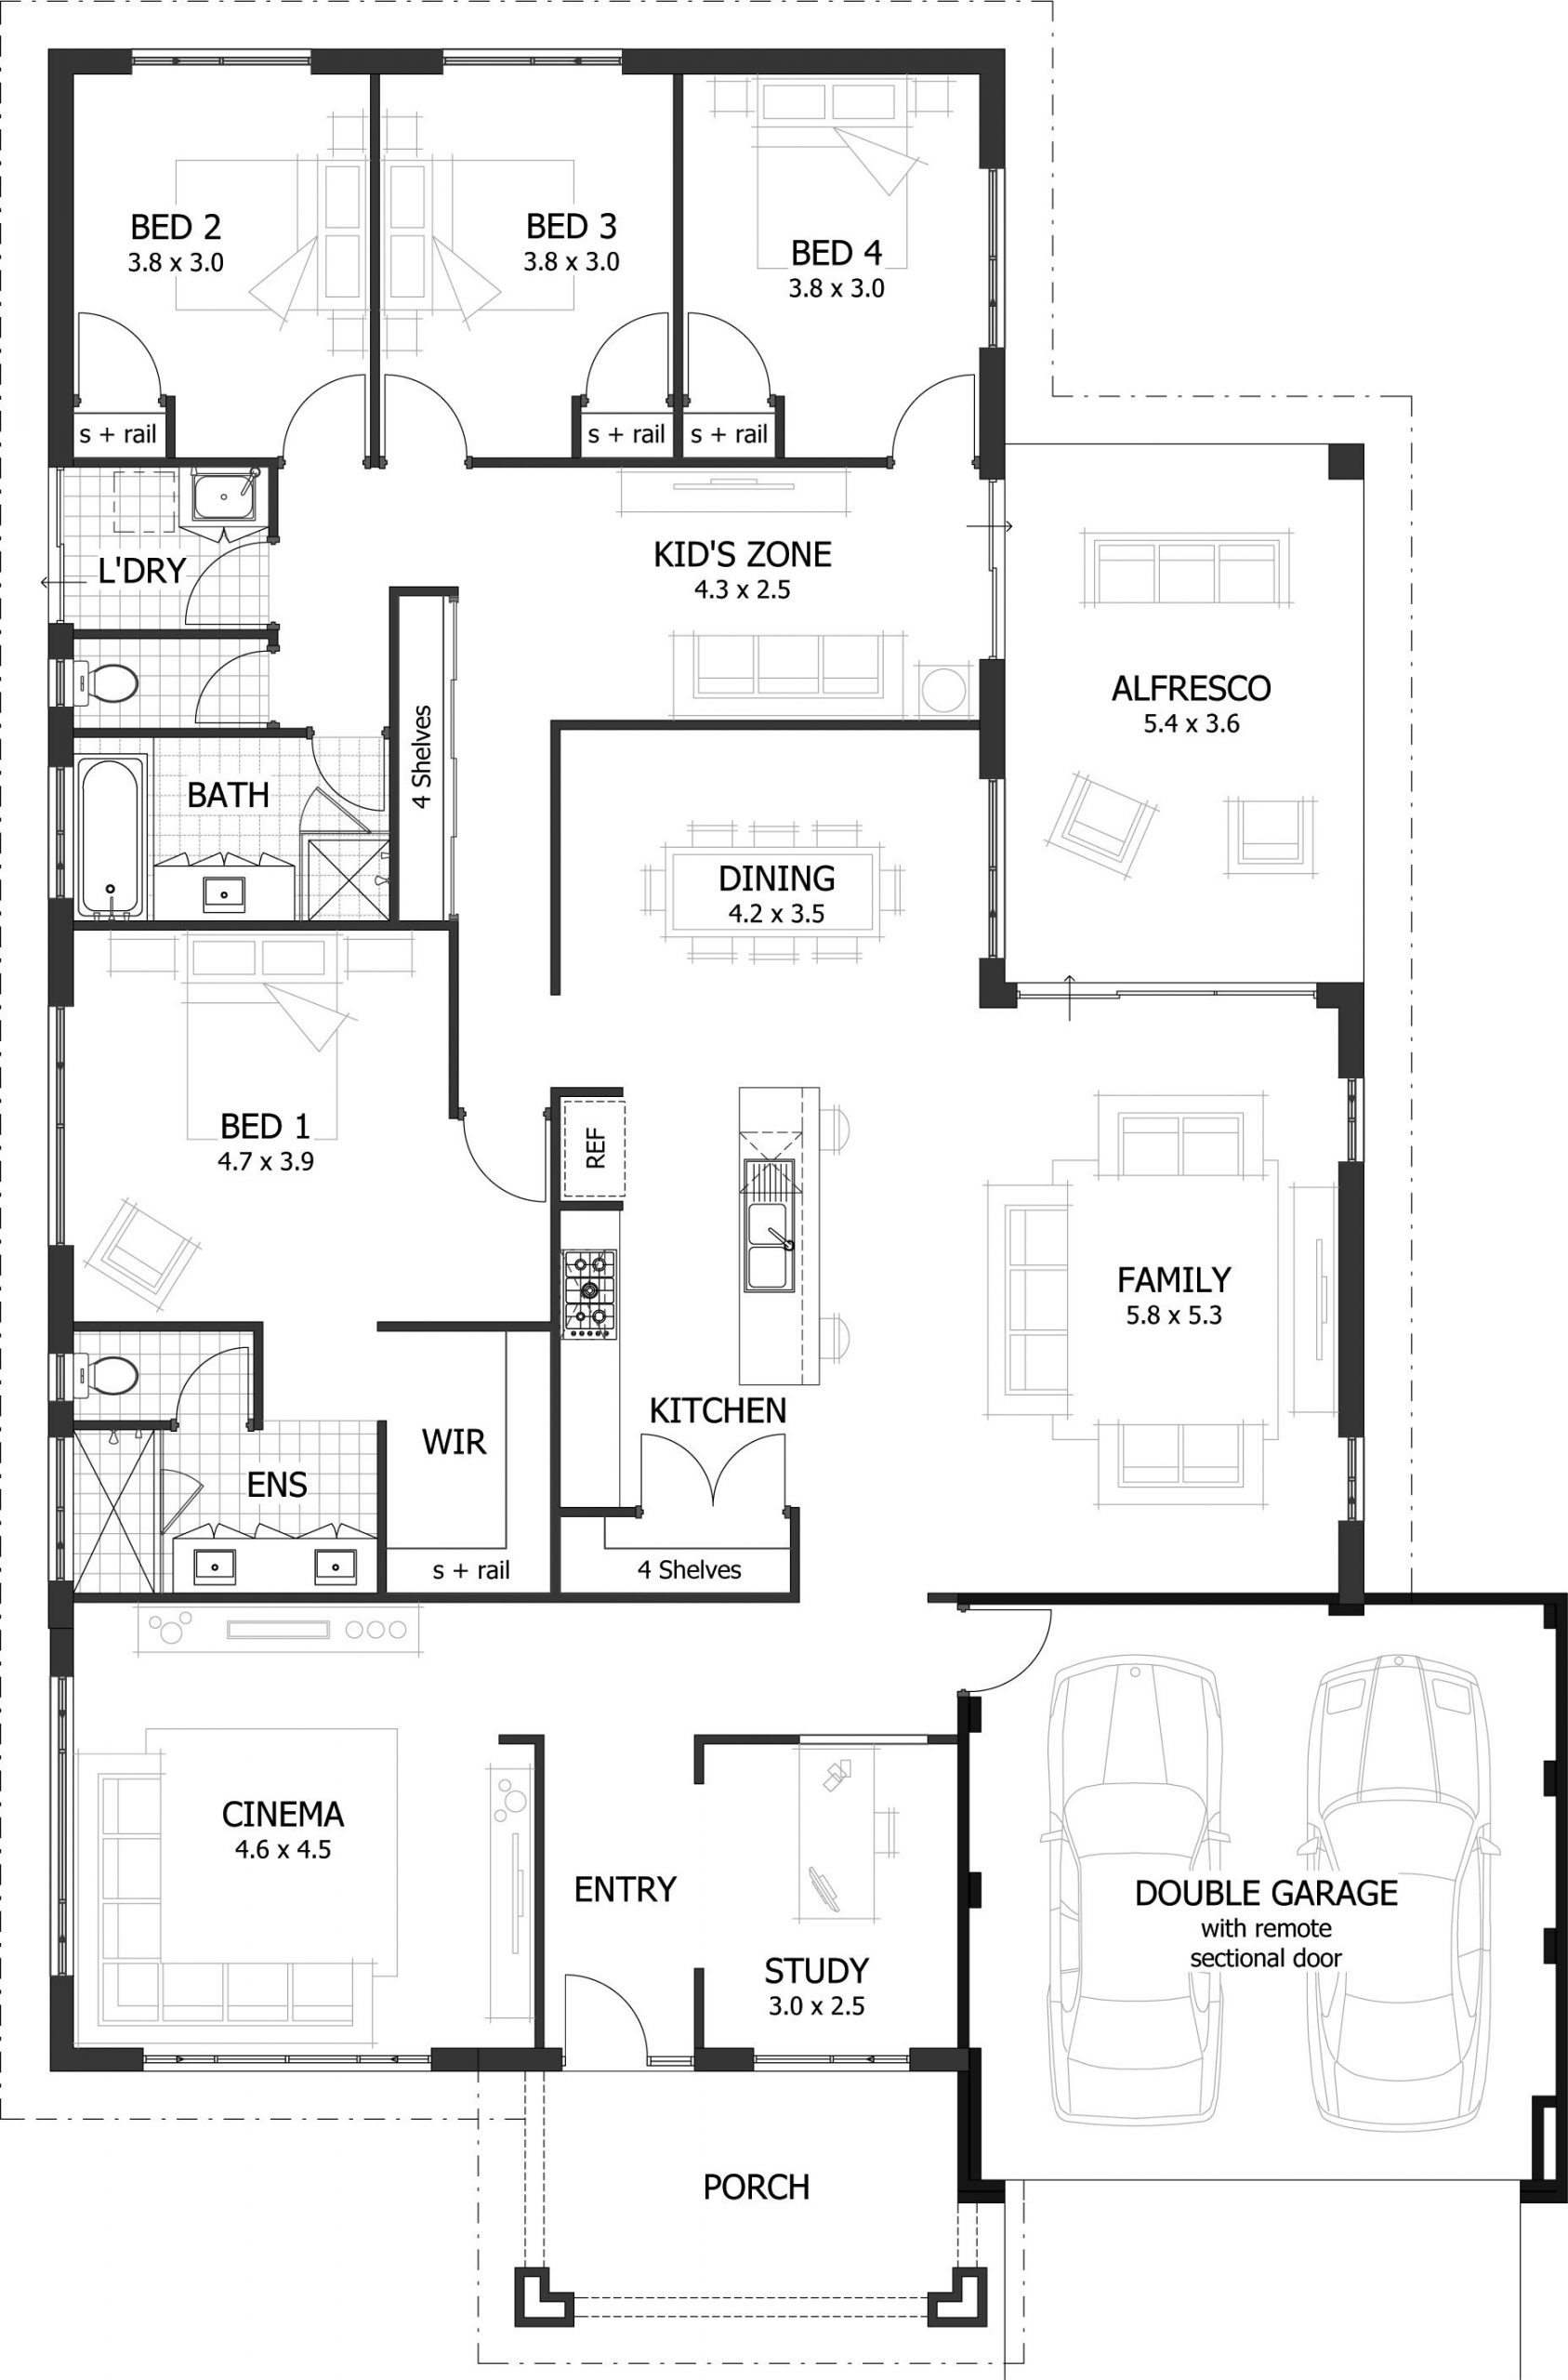 4 Bedroom House Floor Plans